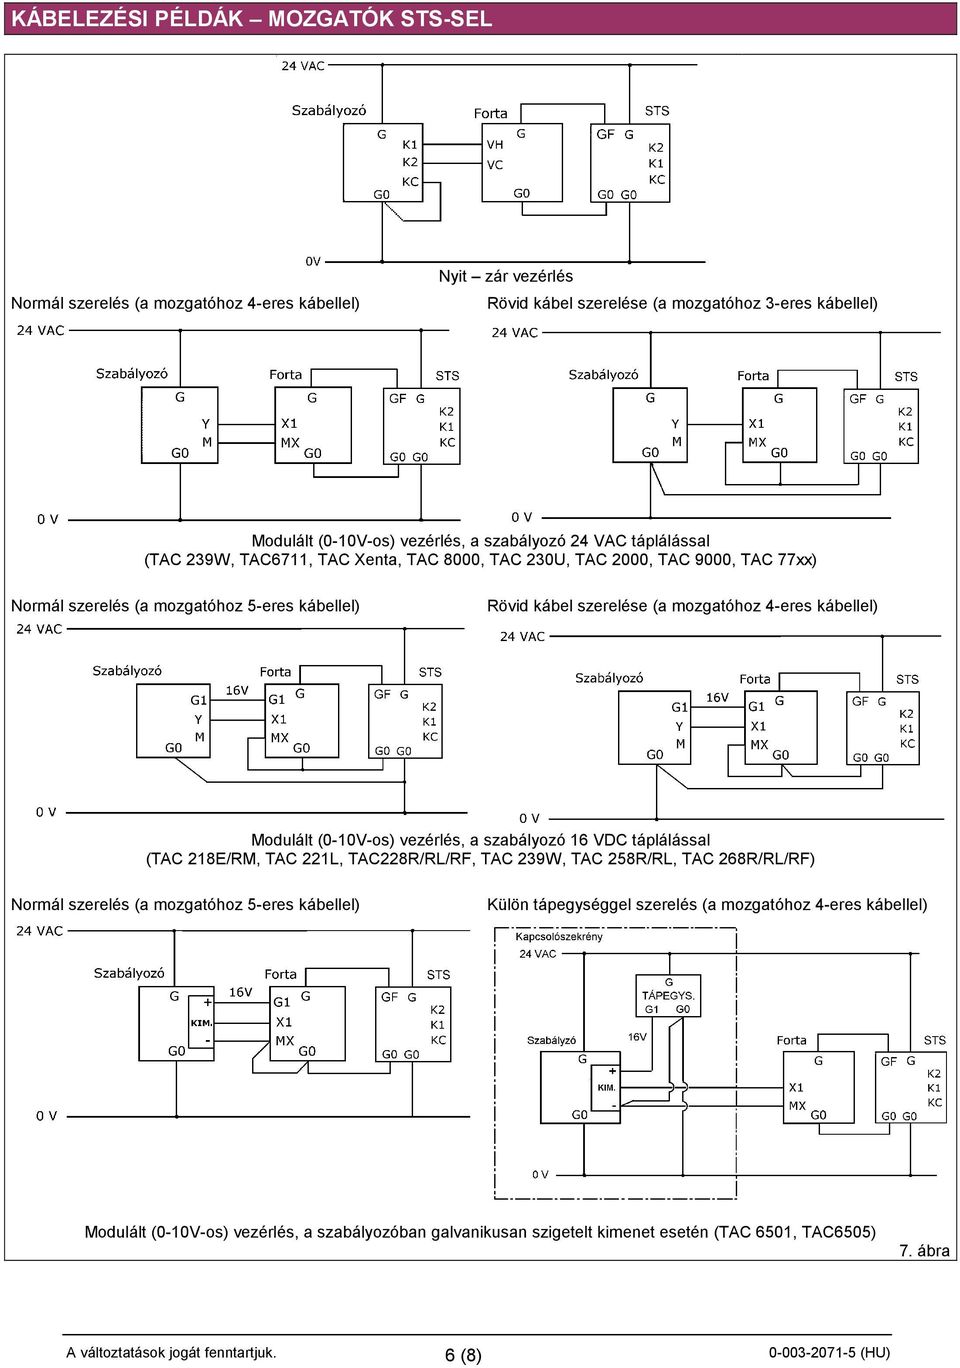 mozgatóhoz 4-eres kábellel) Modulált (0-10V-os) vezérlés, a szabályozó 16 VDC táplálással (TAC 218E/RM, TAC 221L, TAC228R/RL/RF, TAC 239W, TAC 258R/RL, TAC 268R/RL/RF) Normál szerelés (a